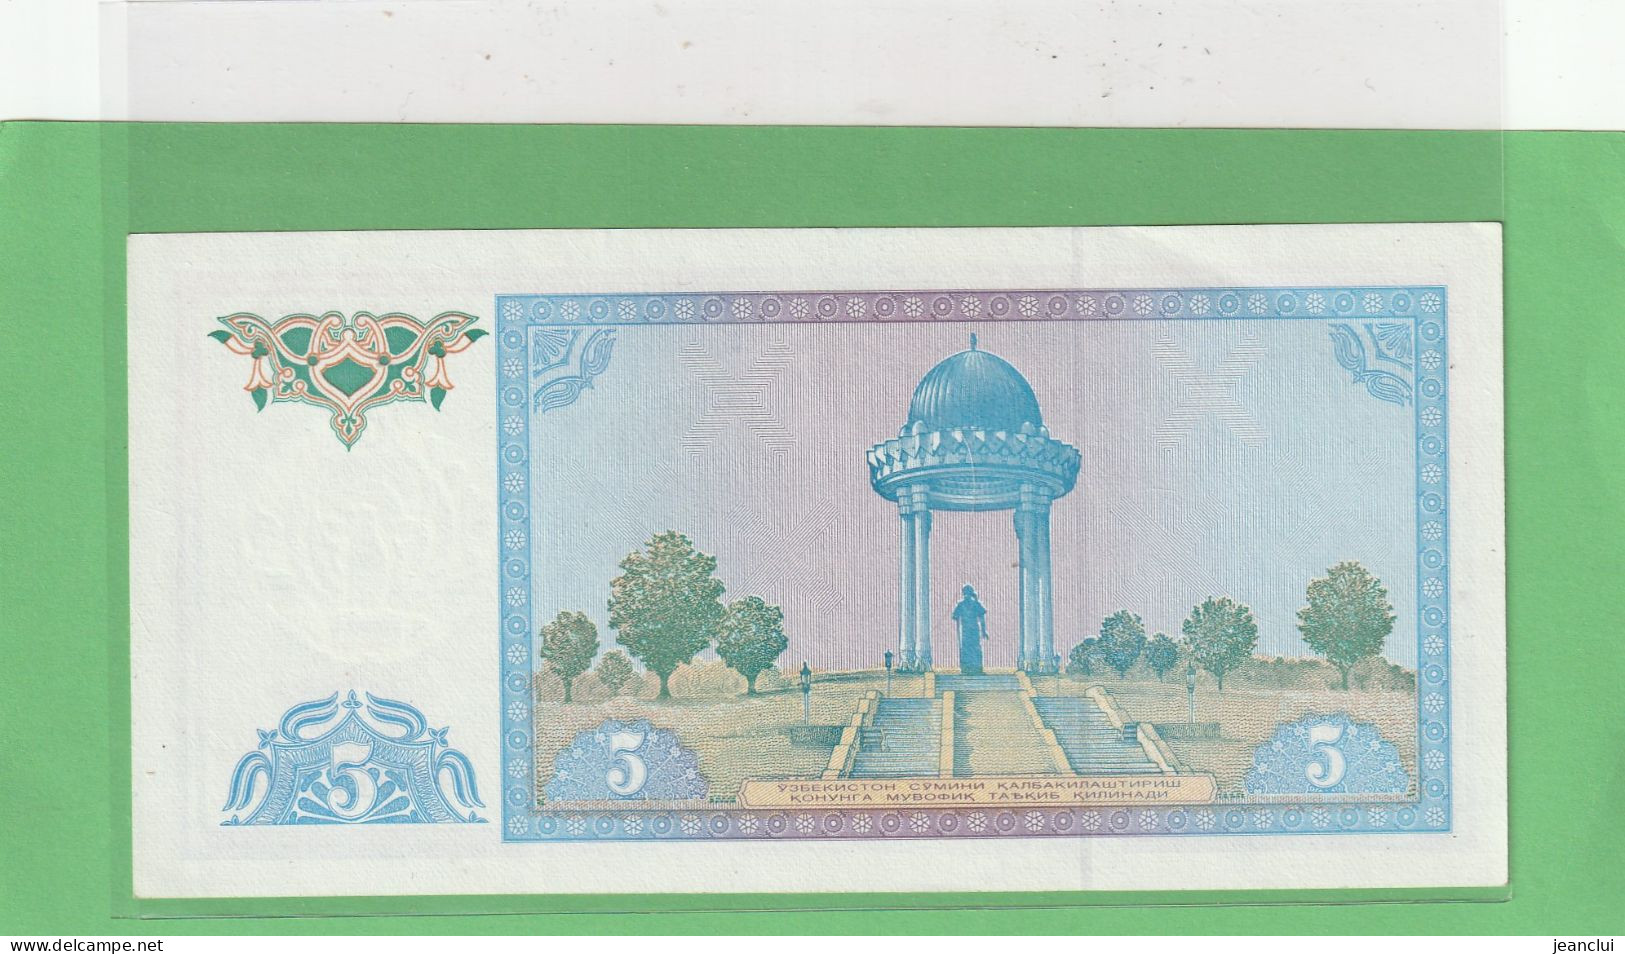 OUZBEKISTAN  .  5 CYM  .  1994   . N° LV 3917310  .  2 SCANNES  .  BILLET ETAT LUXE - Ouzbékistan